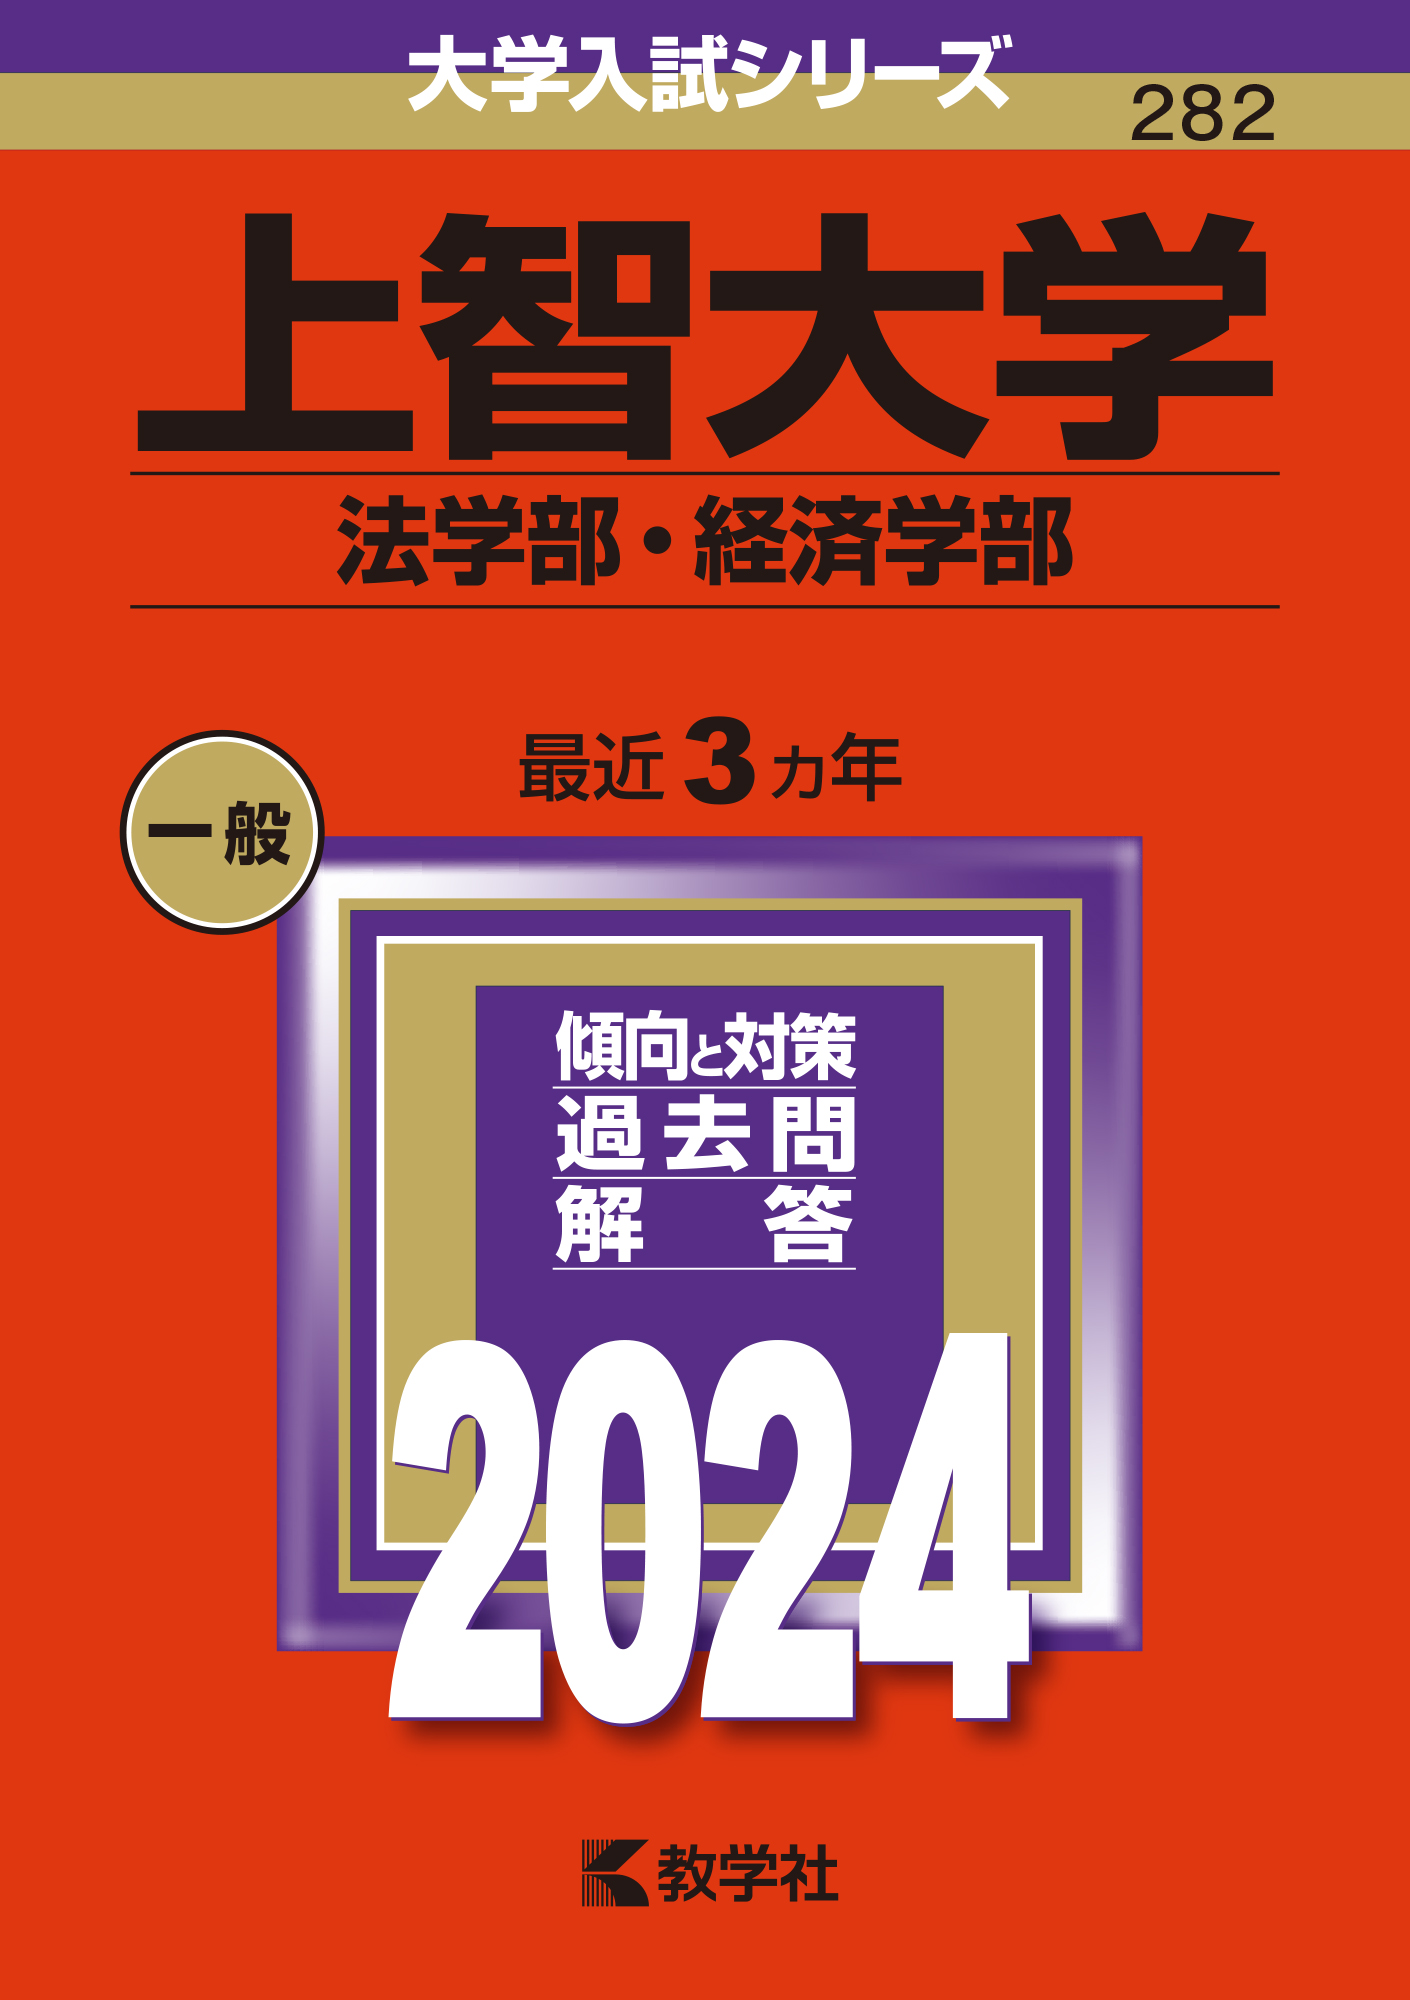 2023年赤本 上智法経済、立教、明治政経、明治経営 | reelemin242.com